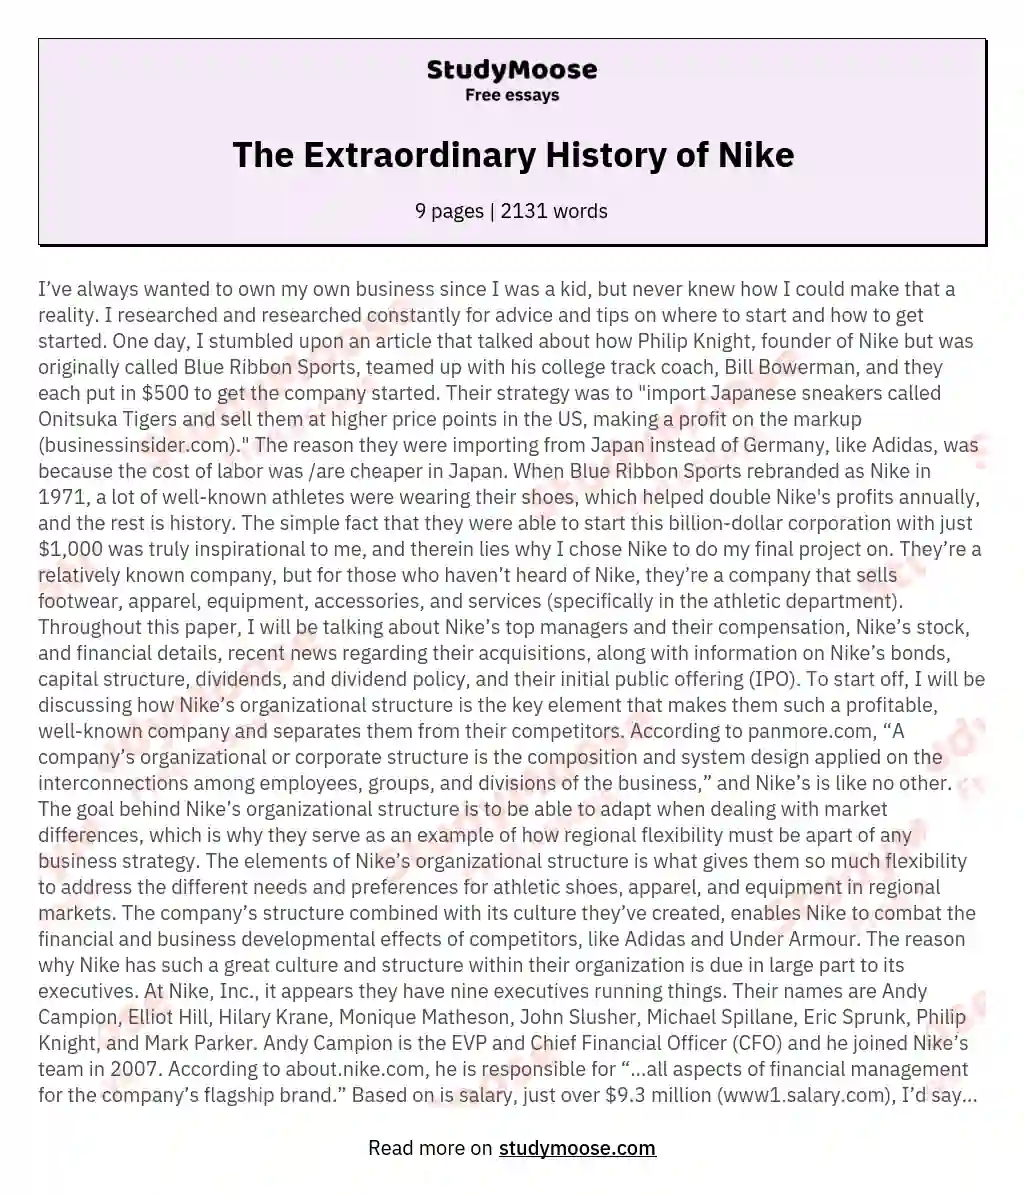 The Extraordinary History of Nike essay